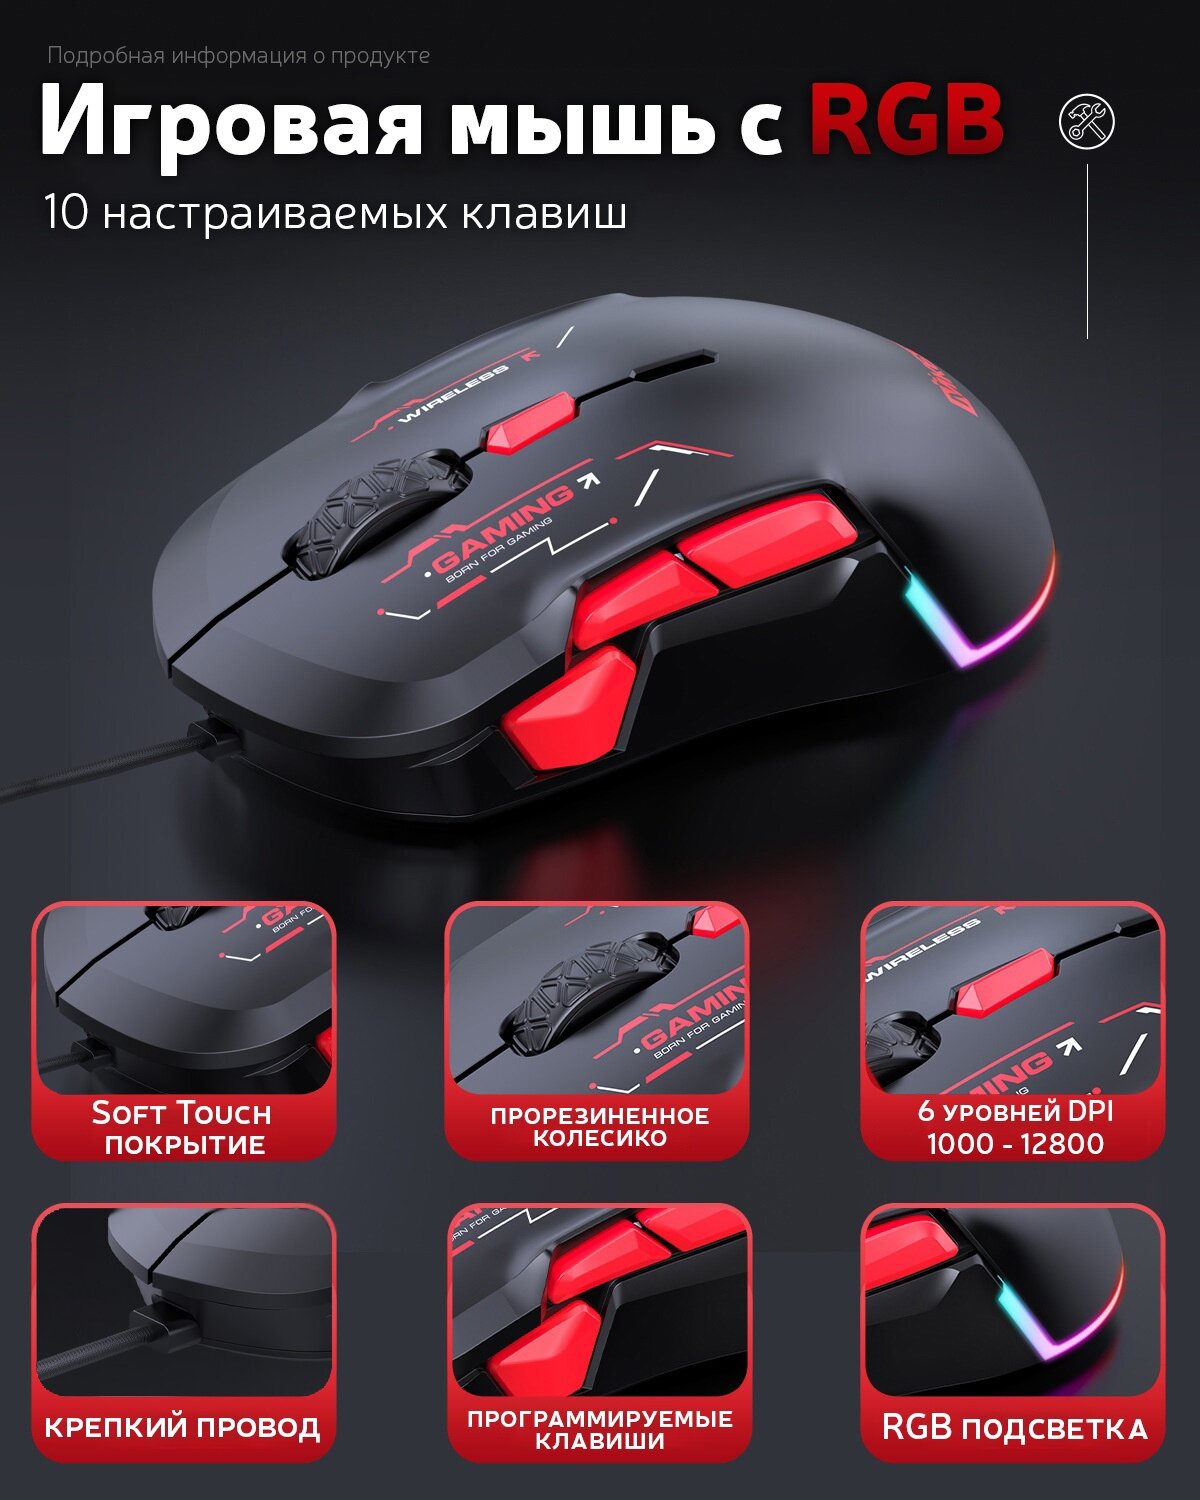 Игровая мышь с RGB подсветкой X10 / Компьютерная мышь / Мышь с макросами / Мышь с подсветкой / Мышь проводная / Мышь макросная / Мышь для левшей